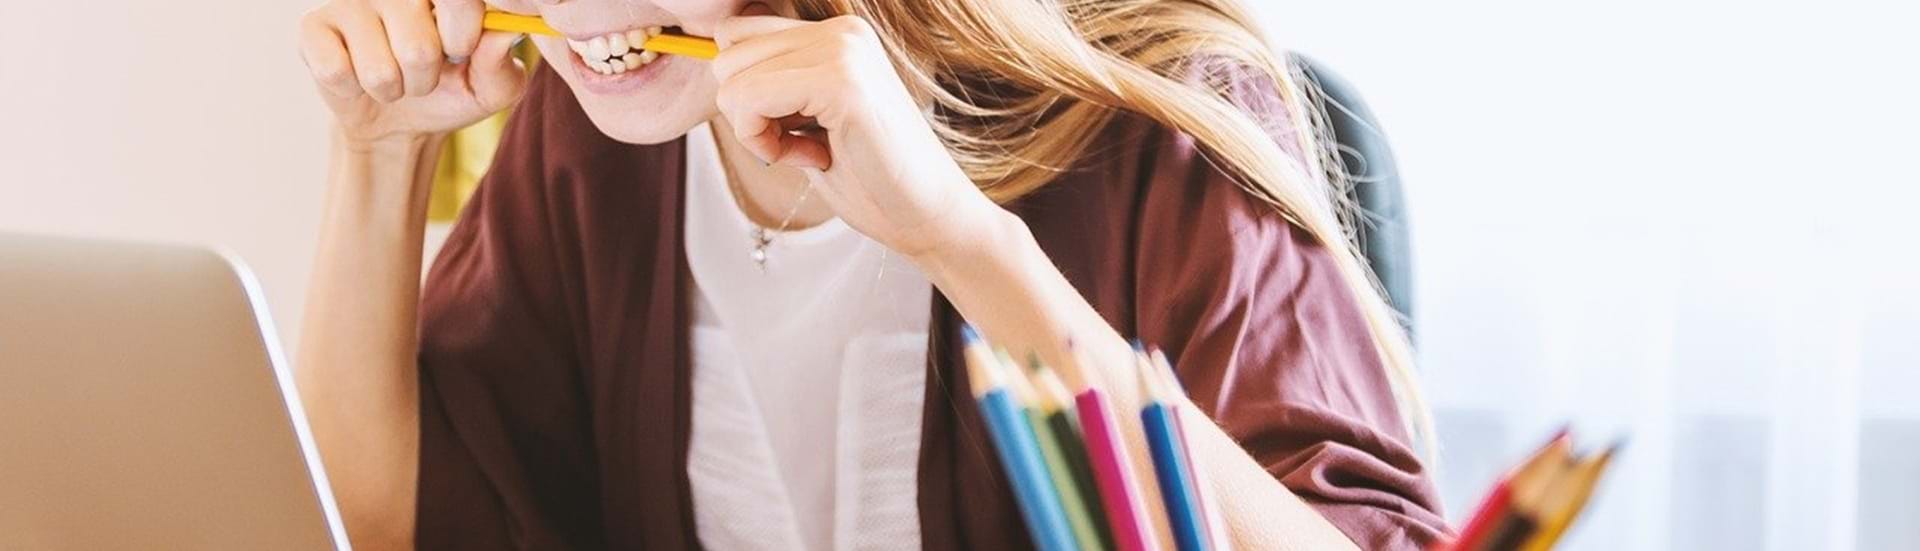 Ung, kvindelig studerende bider i sin blyant og kigger frustreret ind i skærmen på sin laptop